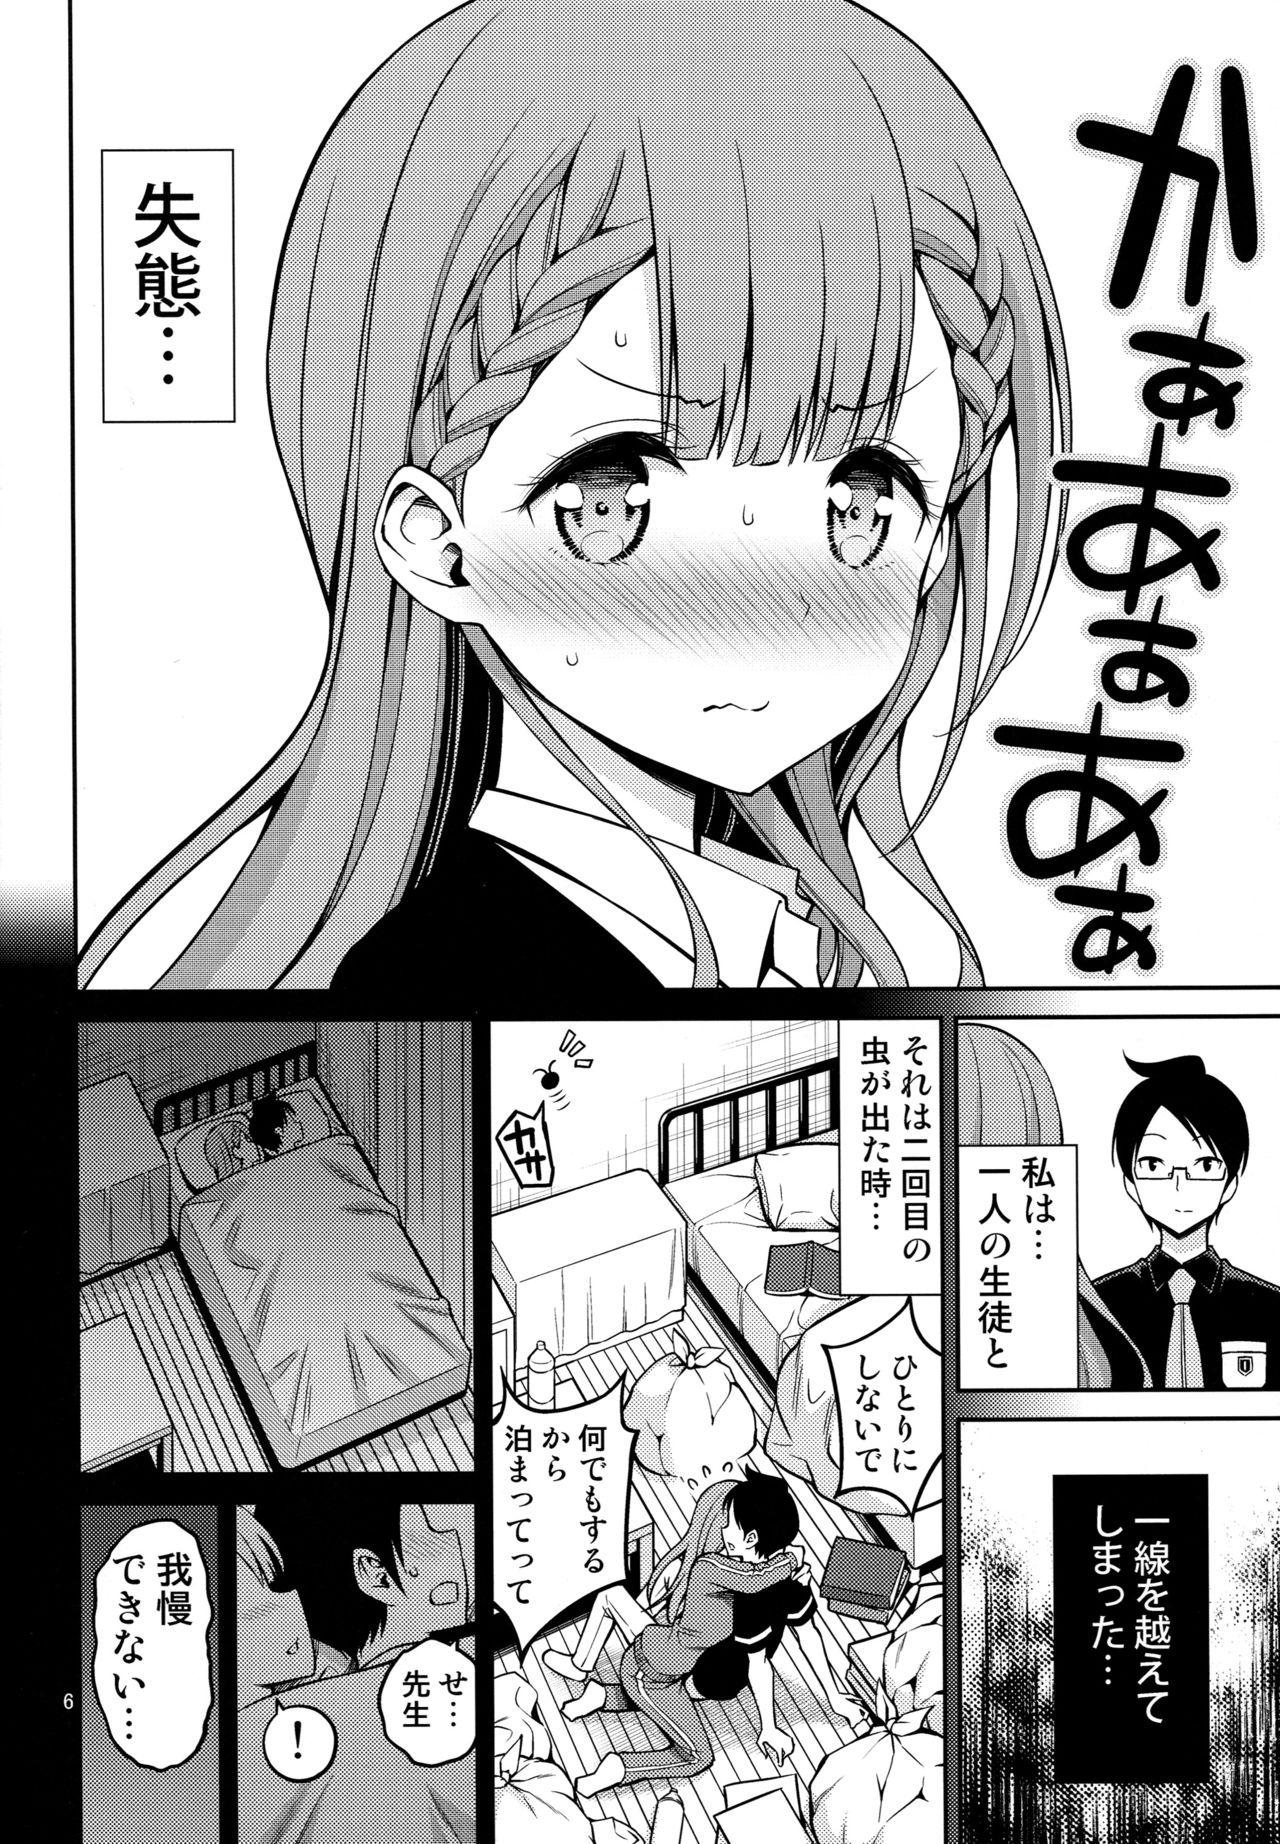 Gritona Kirisu Sensei wa Gaman ga Dekinai - Bokutachi wa benkyou ga dekinai Putas - Page 5